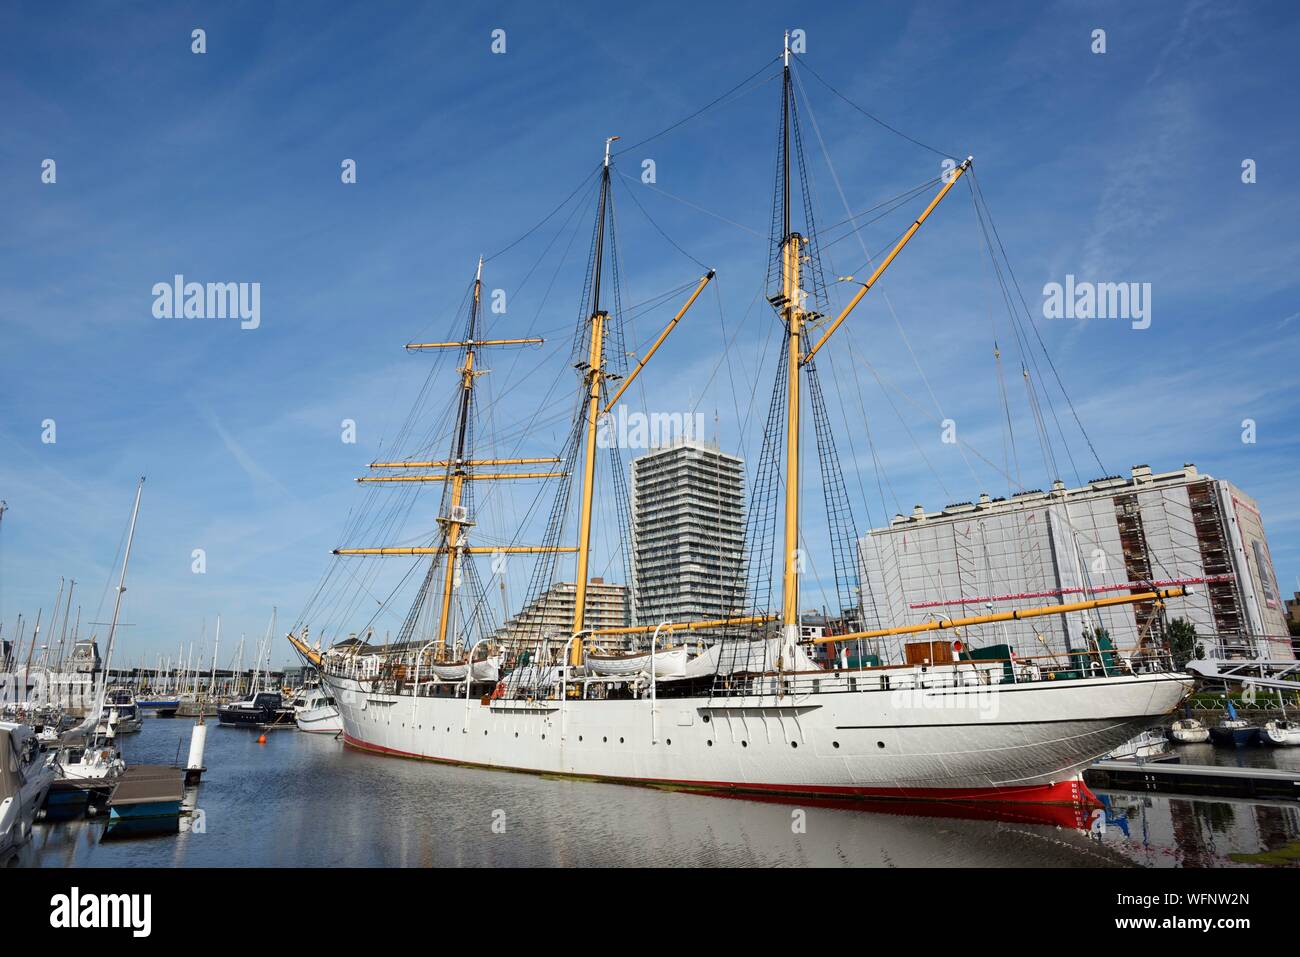 Belgique, Liège, Ostende, le port et le navire école 3 mâts Mercator le construit en 1931 Banque D'Images